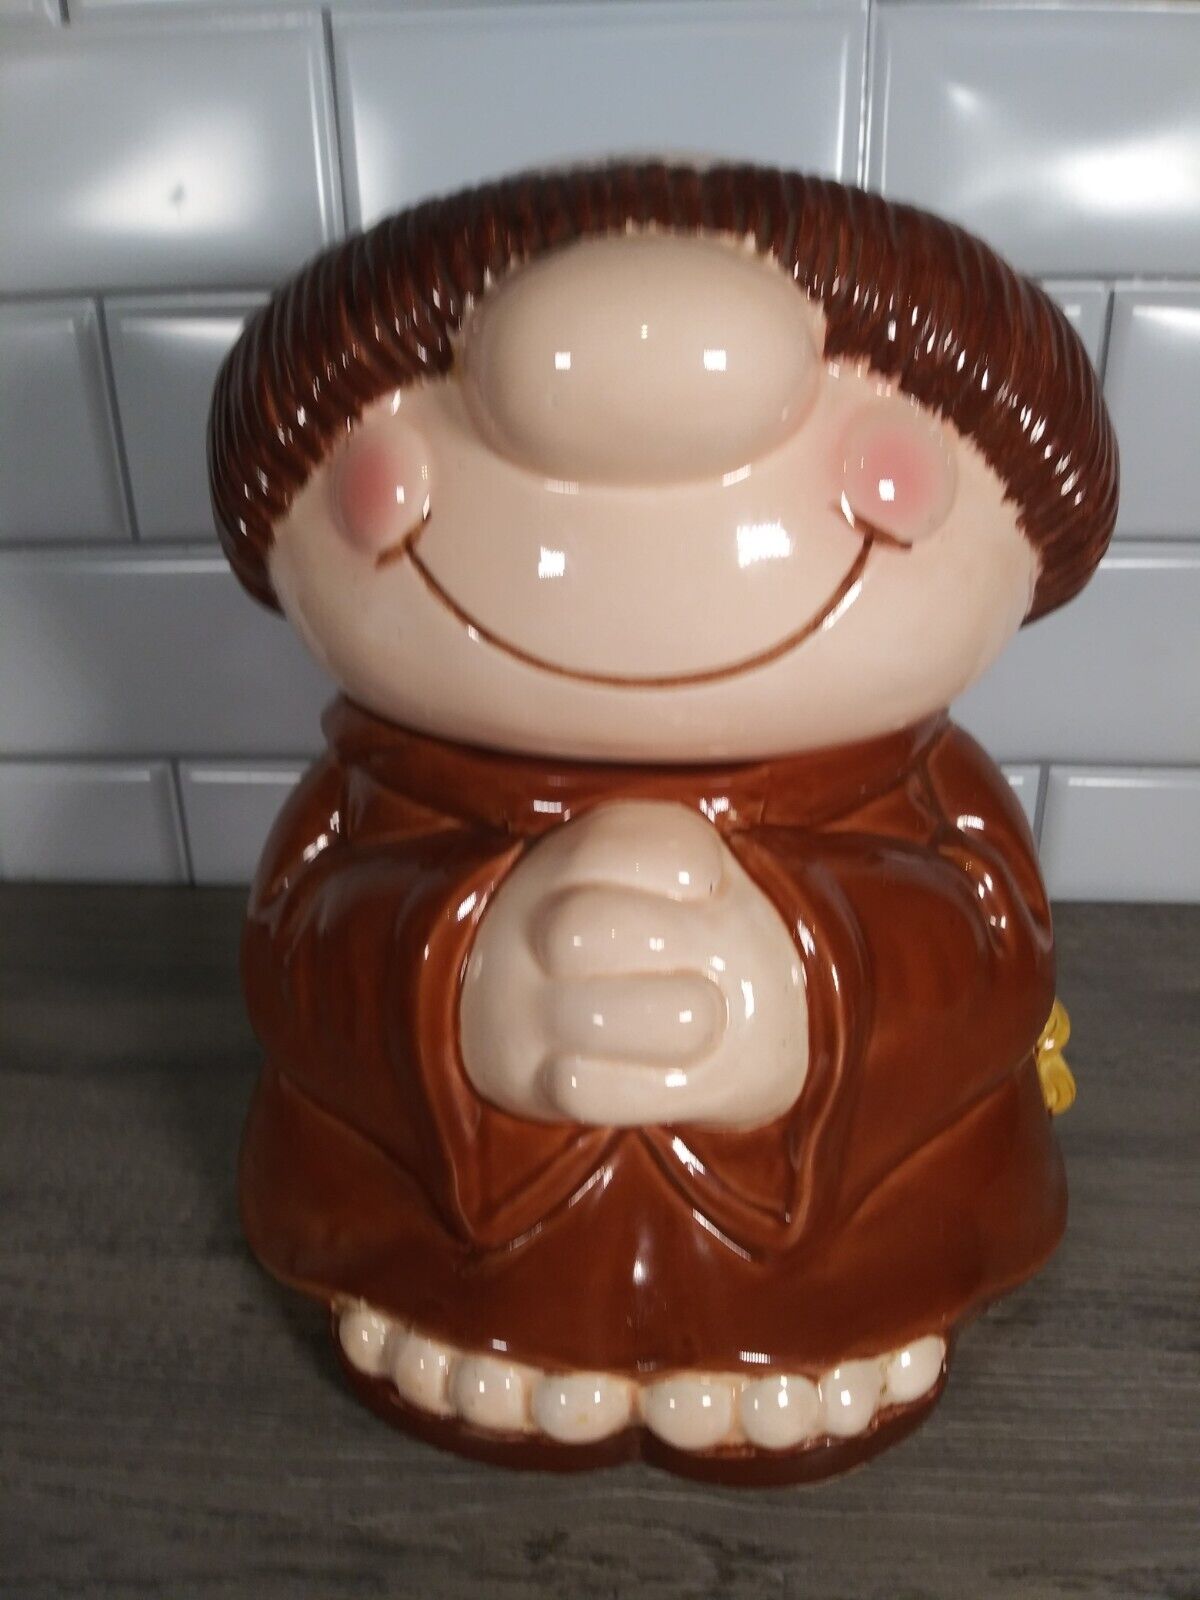 American Greetings Ceramic Cookie Jar Sherman on the Mount Monk Cartoon 1983